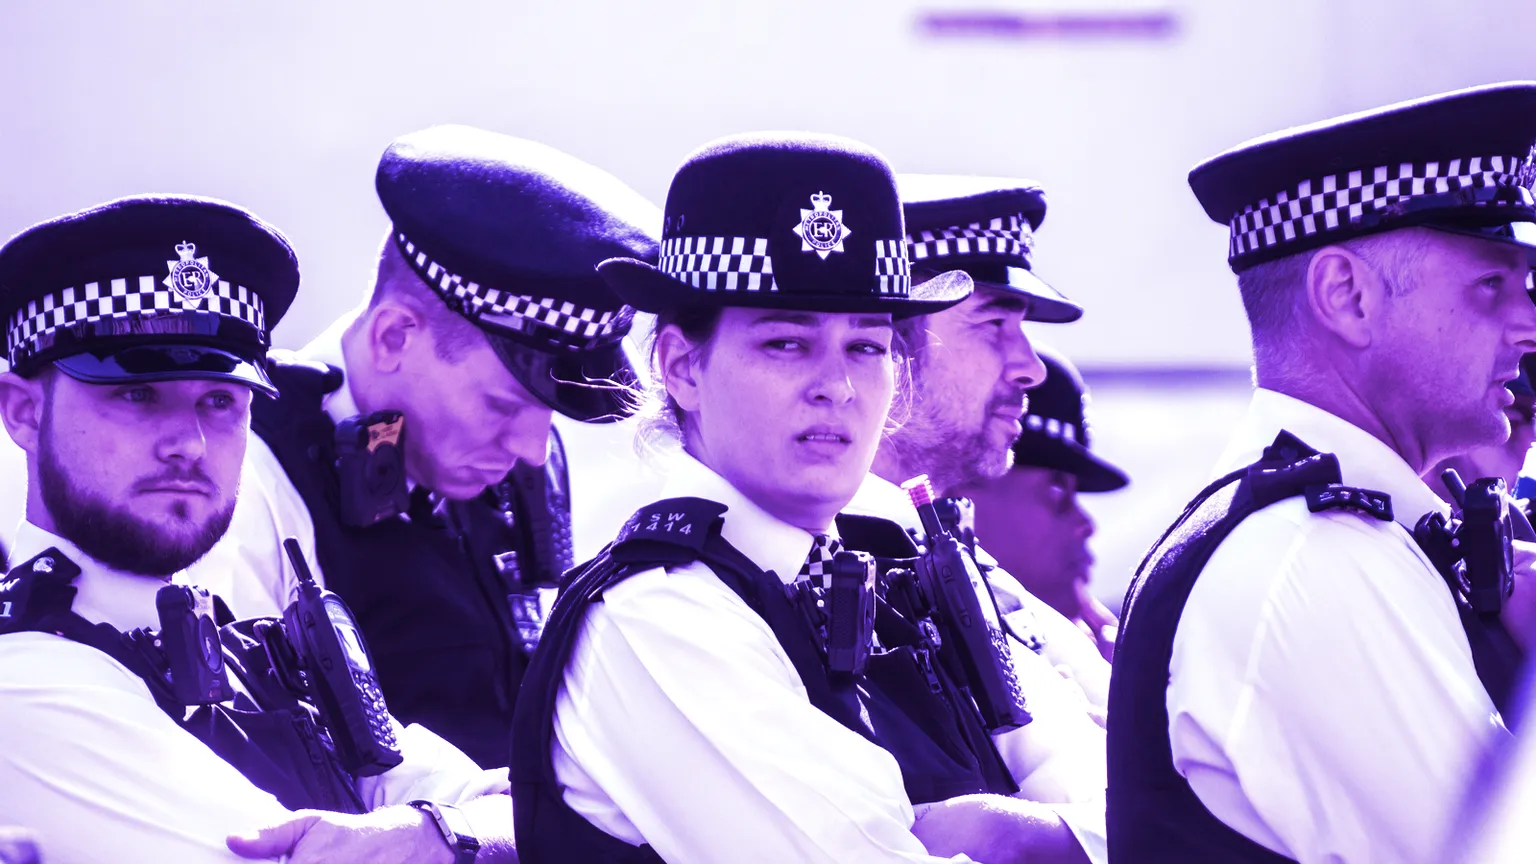 La Policía Metropolitana de Londres es responsable de la aplicación de la ley en los 32 distritos de la ciudad. Imagen: Shutterstock